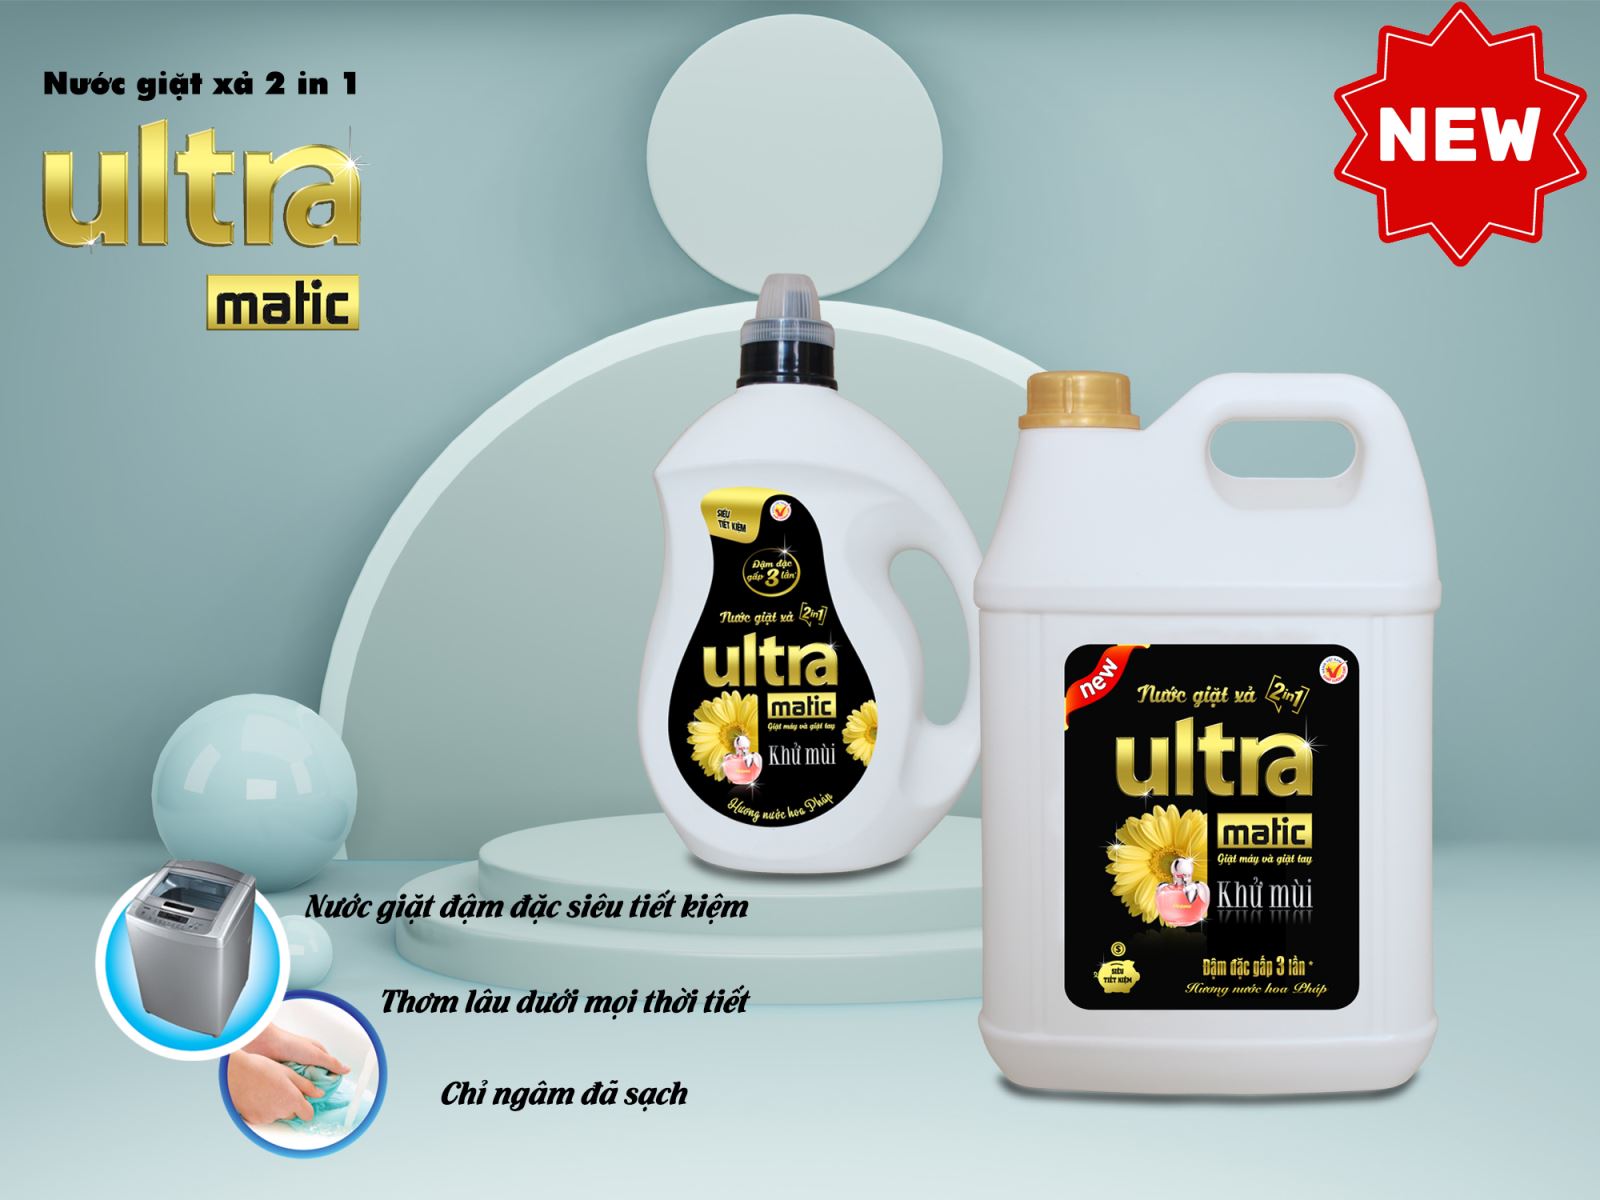 Nước giặt xả Ultra Matic siêu tiết kiệm